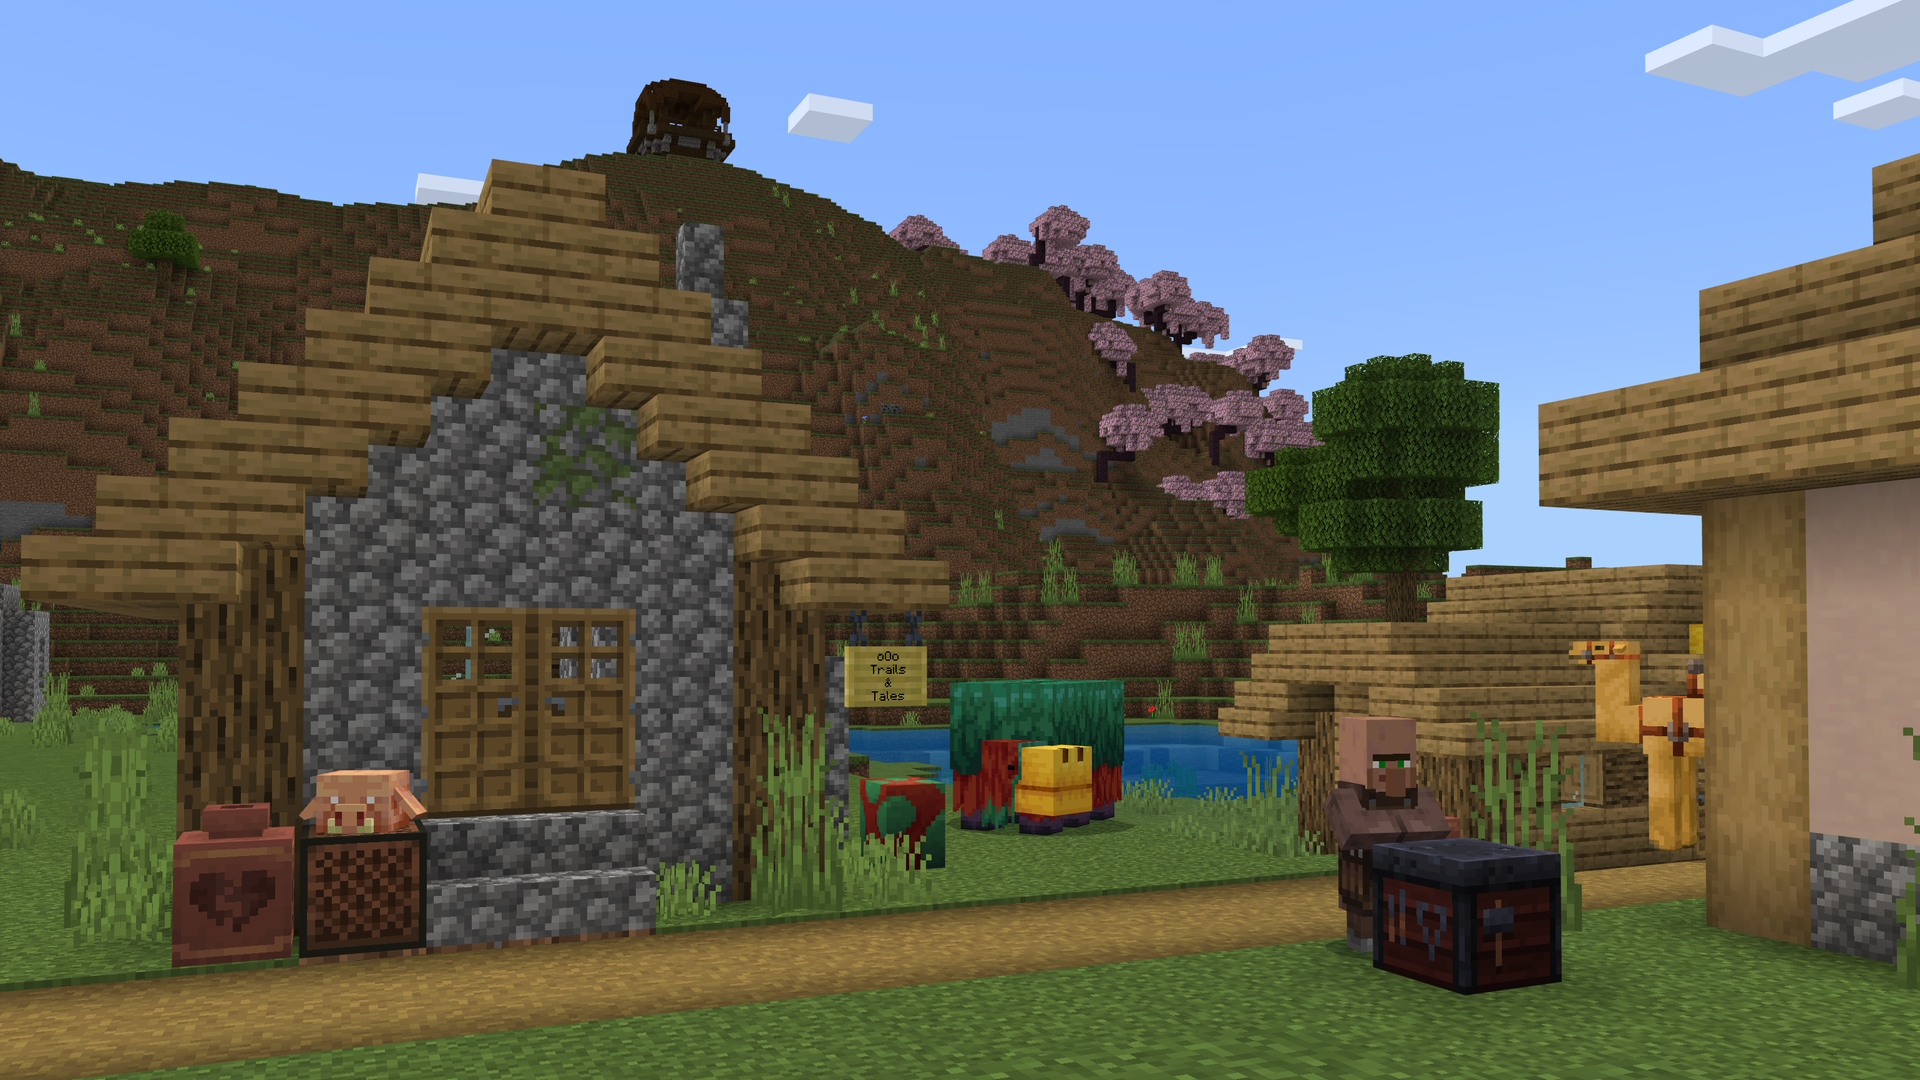 لقطة شاشة من Minecraft تظهر قرية ، قروي ، شمّاس ، مع بستان كرز وبؤرة نهب على جانب جبل في الخلفية.